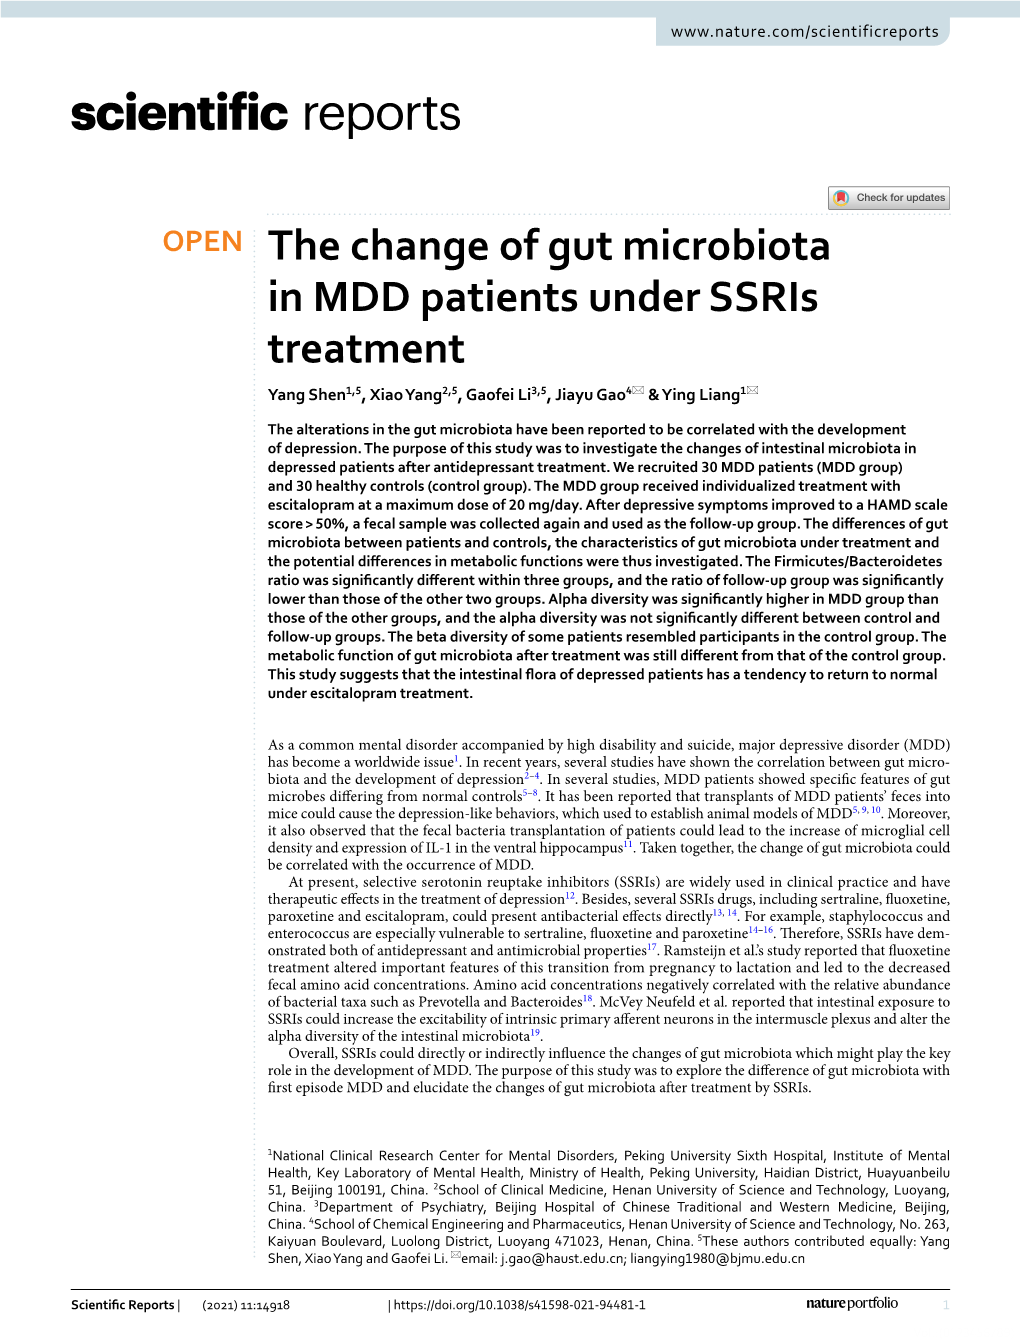 The Change of Gut Microbiota in MDD Patients Under Ssris Treatment Yang Shen1,5, Xiao Yang2,5, Gaofei Li3,5, Jiayu Gao4* & Ying Liang1*